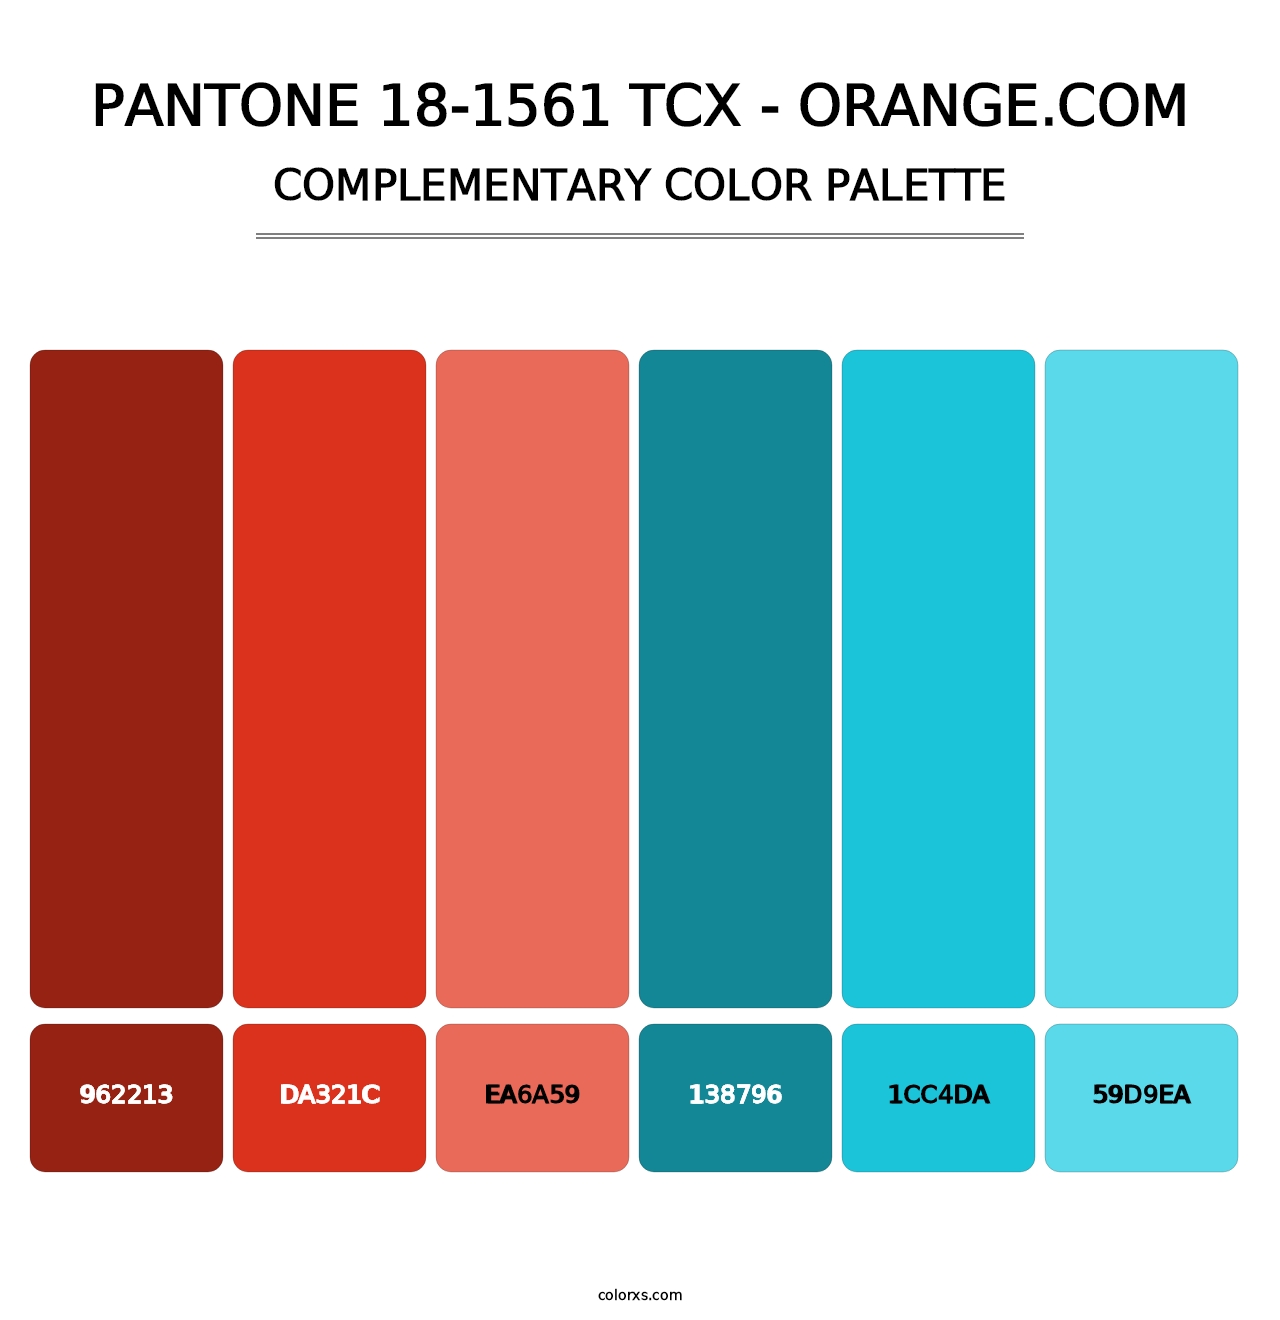 PANTONE 18-1561 TCX - Orange.com - Complementary Color Palette